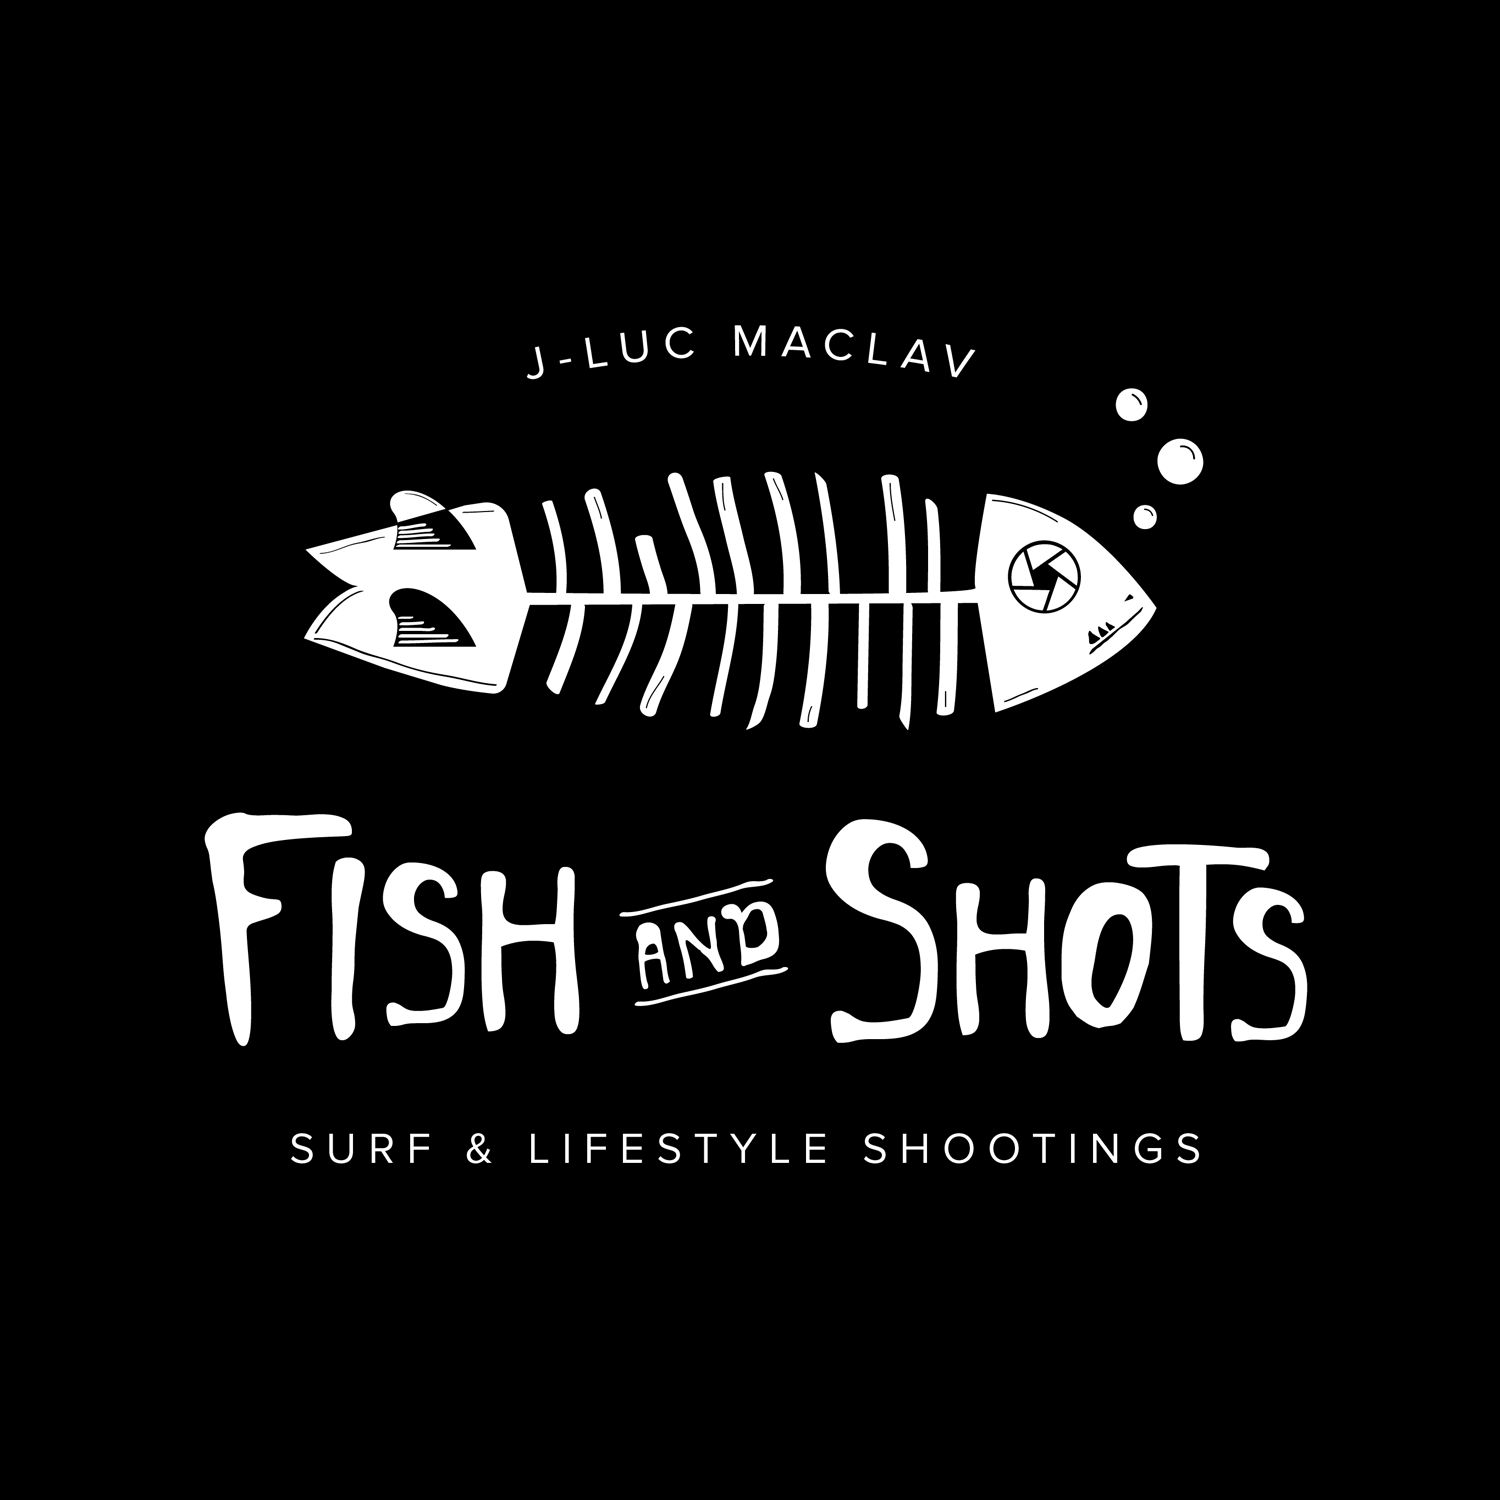 Fish and shots Logo, J-Luc MacLav.